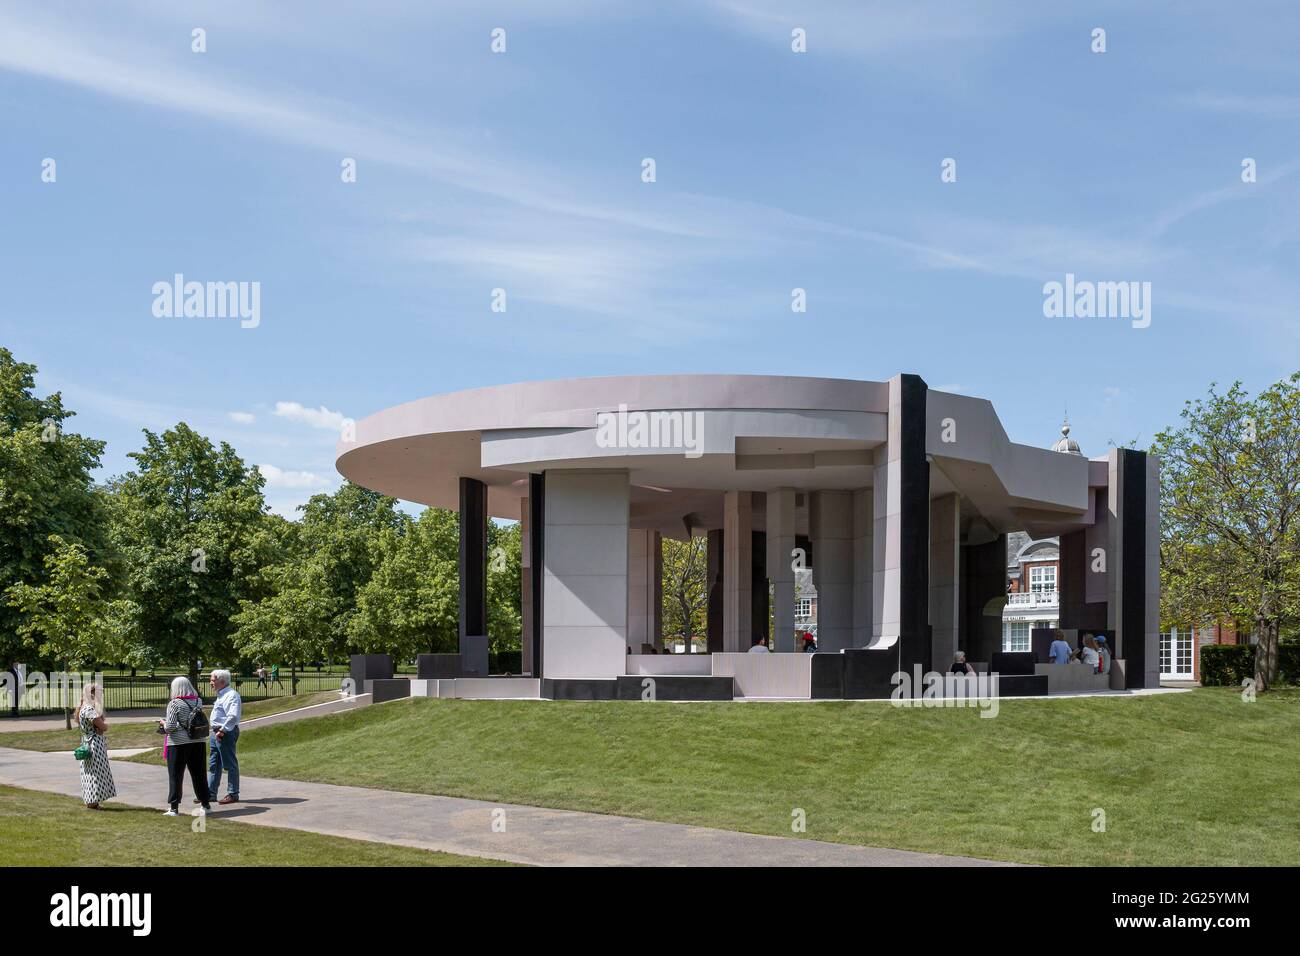 Pavillon dans le cadre de Kensington Gardens. Pavillon d'été en serpentin 2021, Londres, Royaume-Uni. Architecte: Conterspace, 2021. Banque D'Images